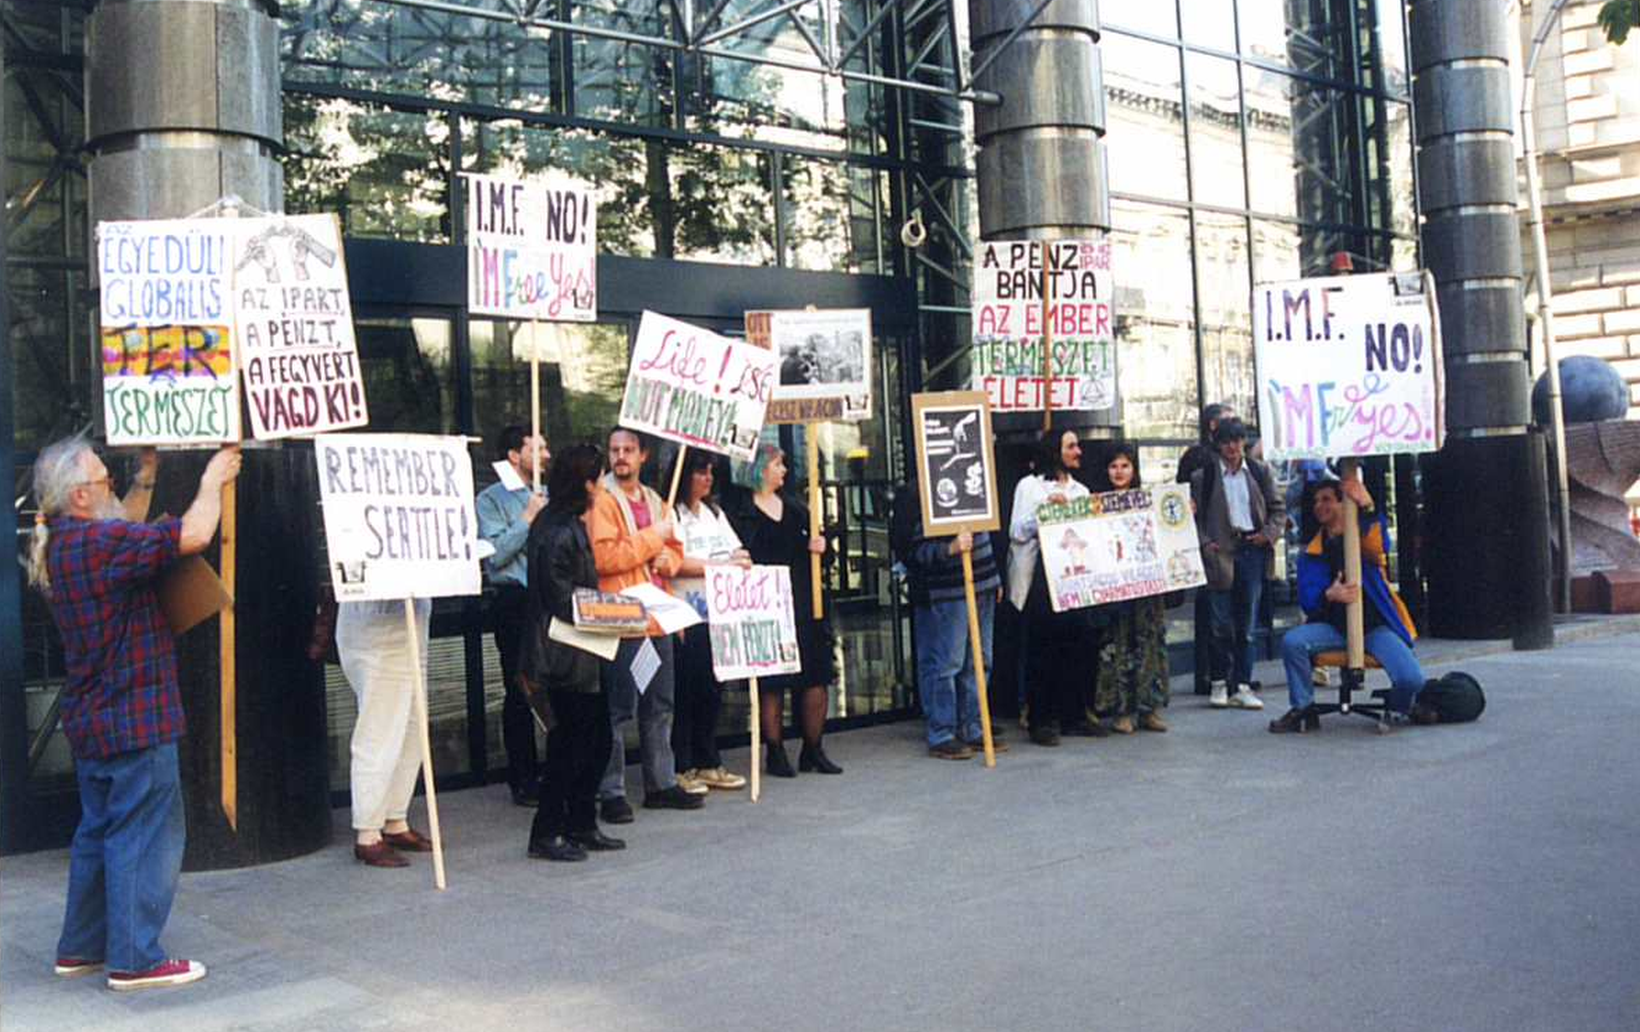 A Világbank budapesti irodája elé szervezett, Bankwatch inspirálta egyik, a bank befektetési elveit kritizáló tiltakozás a '90-es években